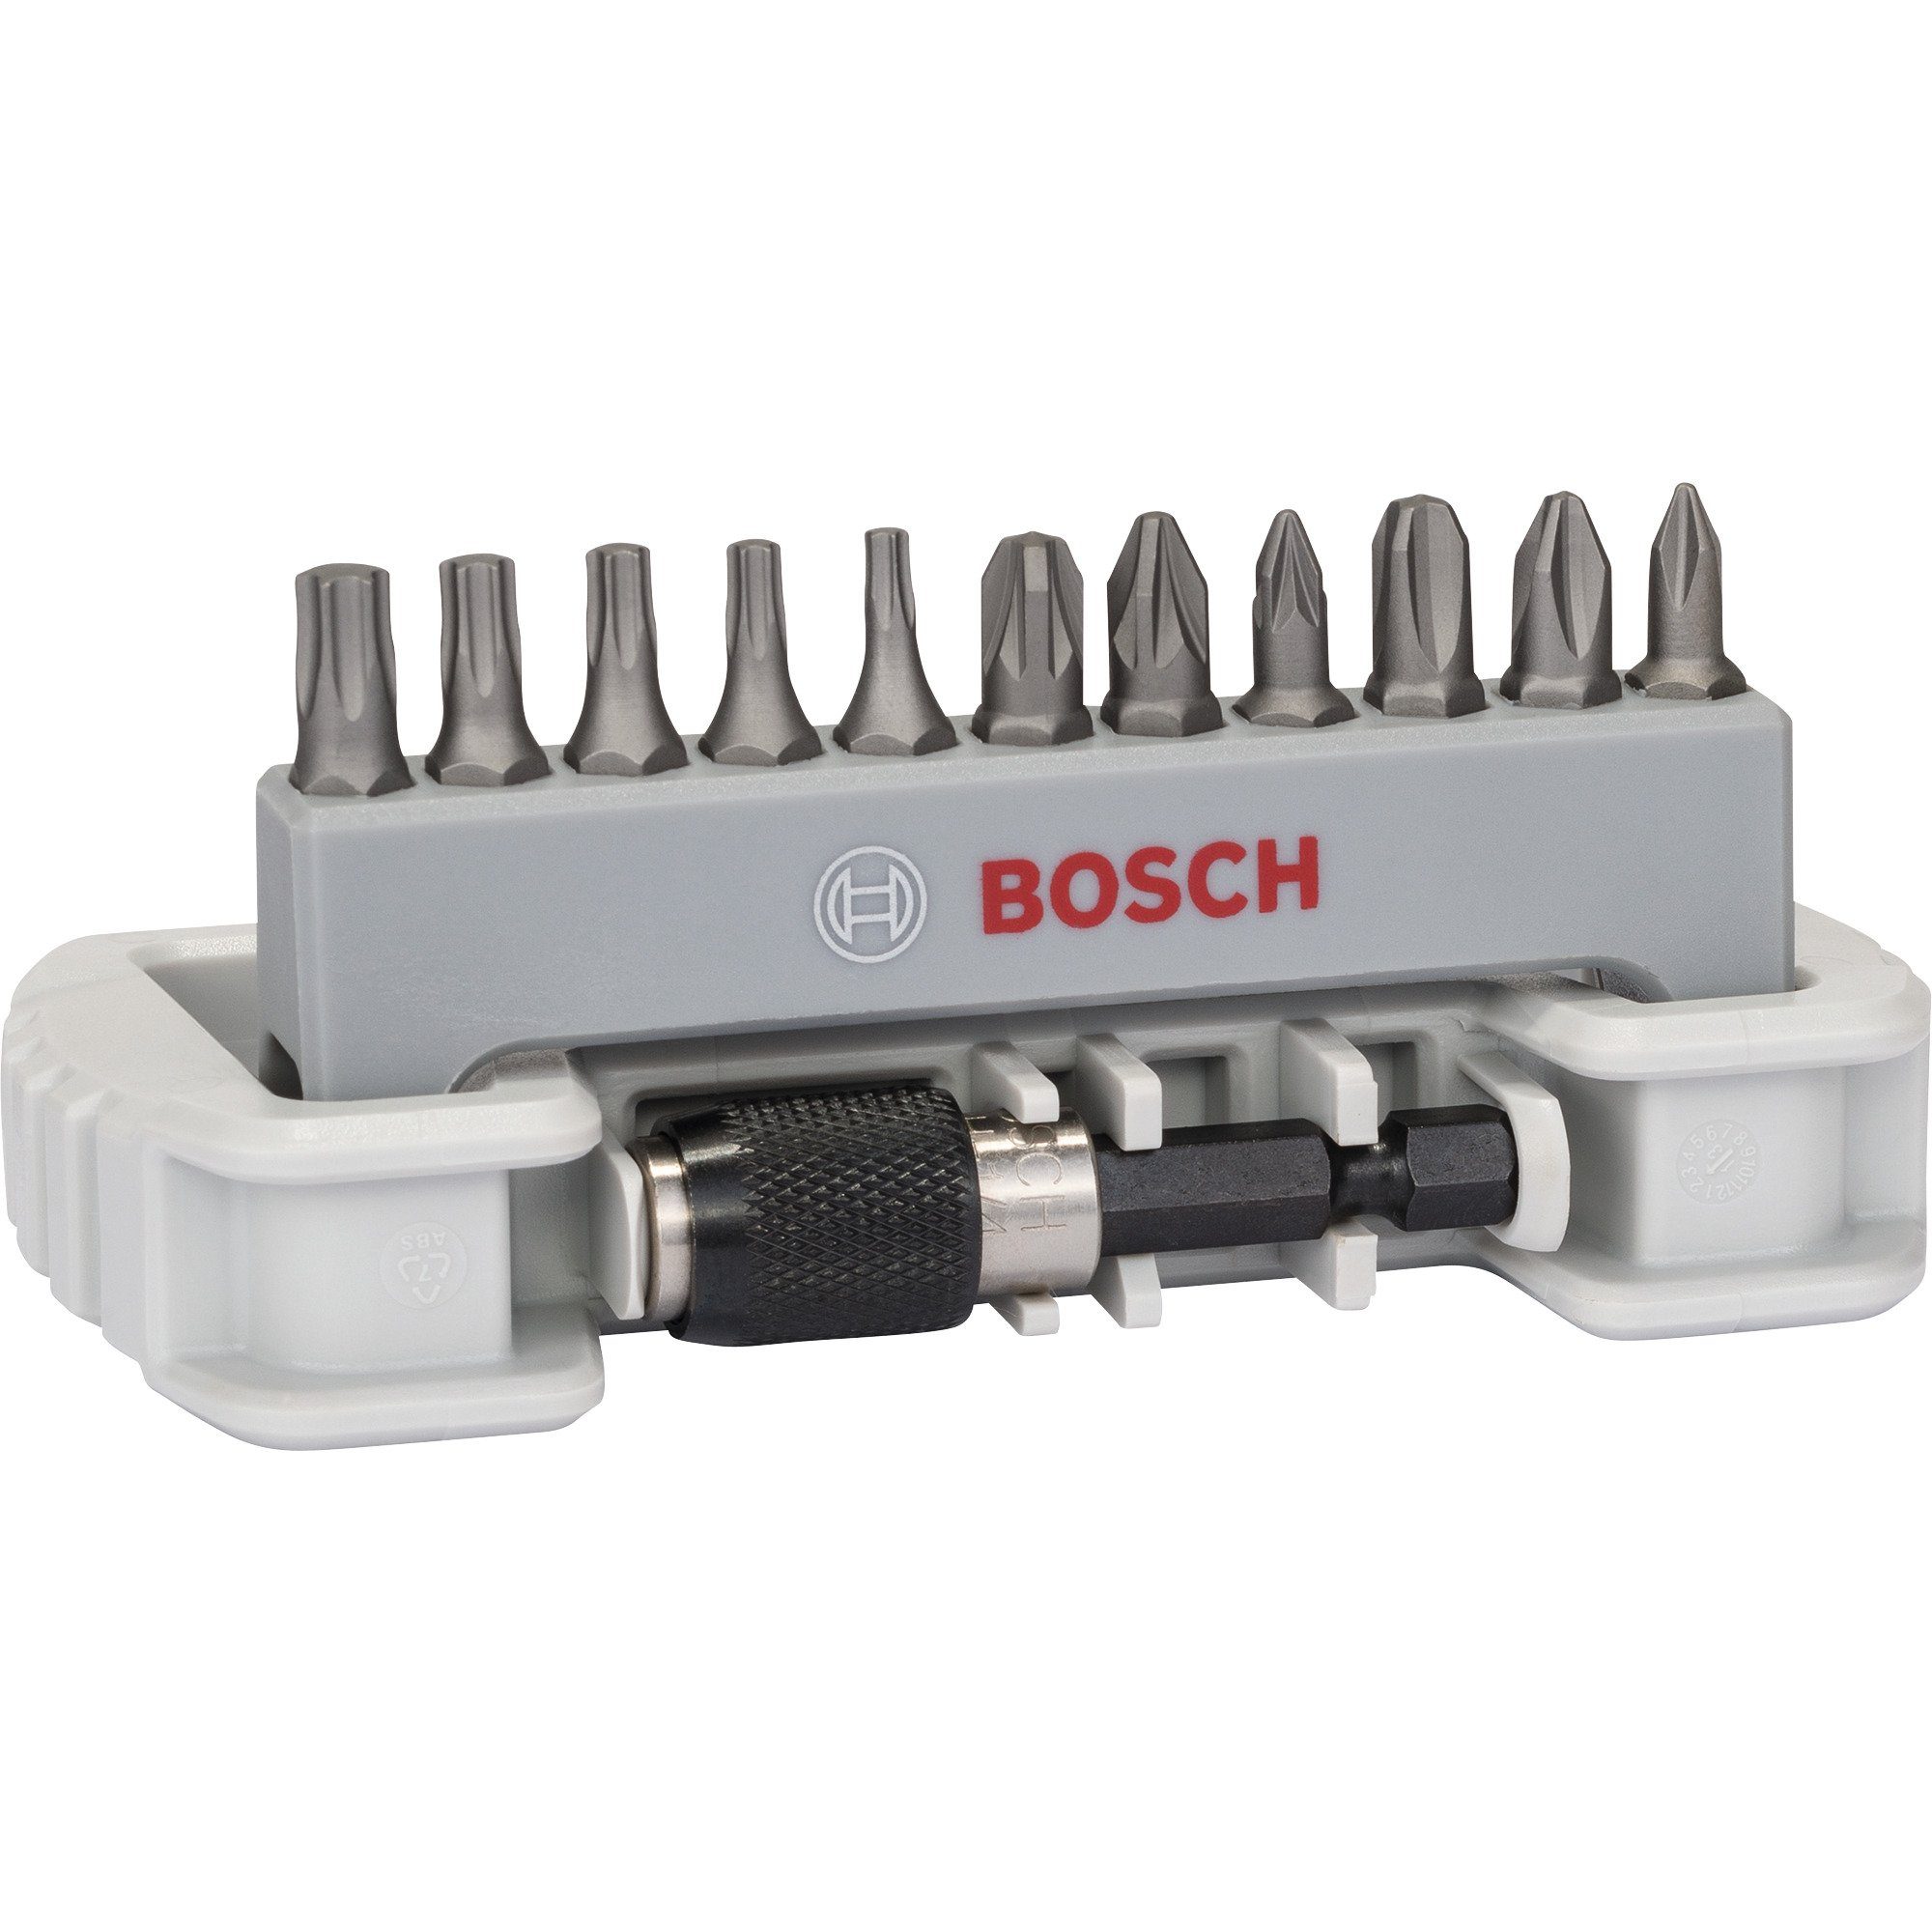 BOSCH Bit-Set Bosch Professional Bit-Satz Hart Extra